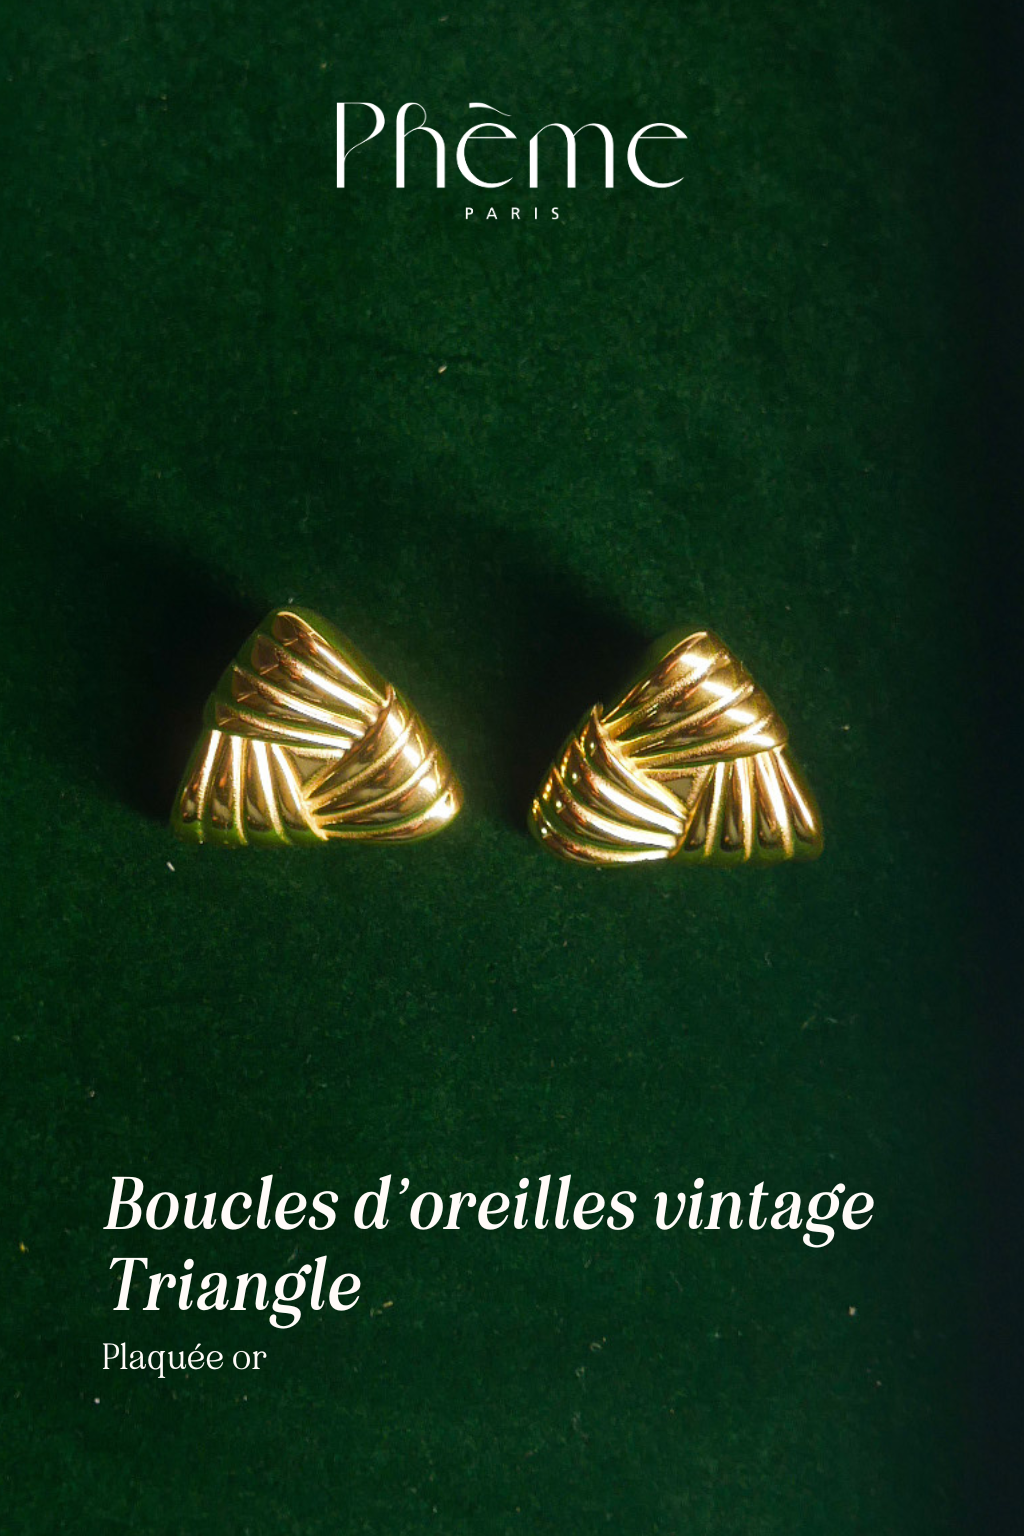 Boucles d'oreilles vintage triangulaires - plaqué or